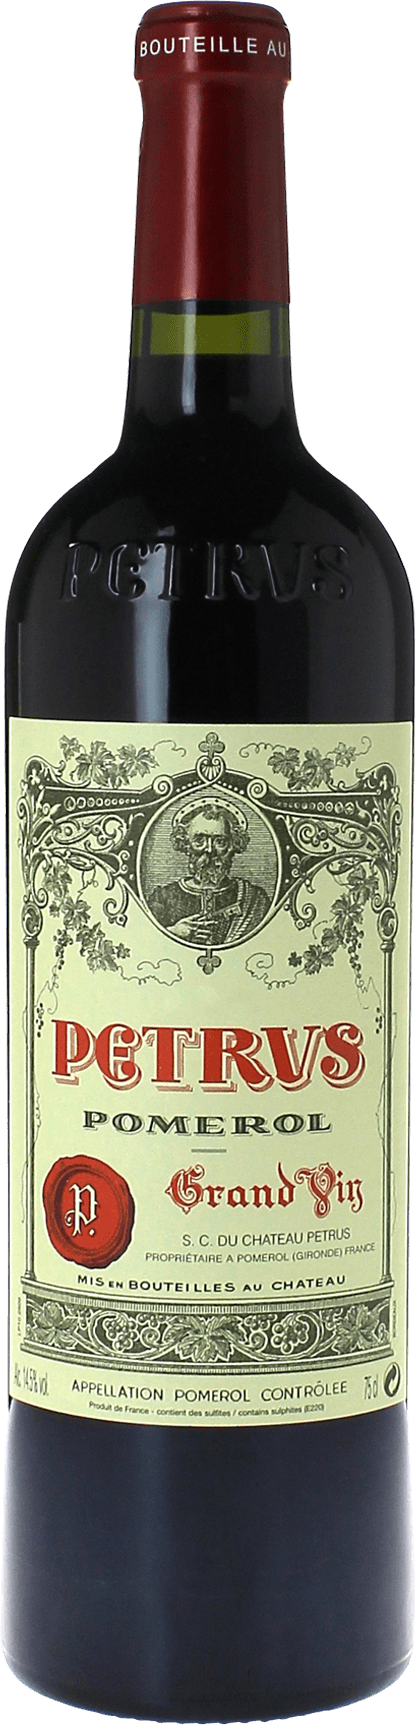 Petrus 1969  Pomerol, Bordeaux rouge